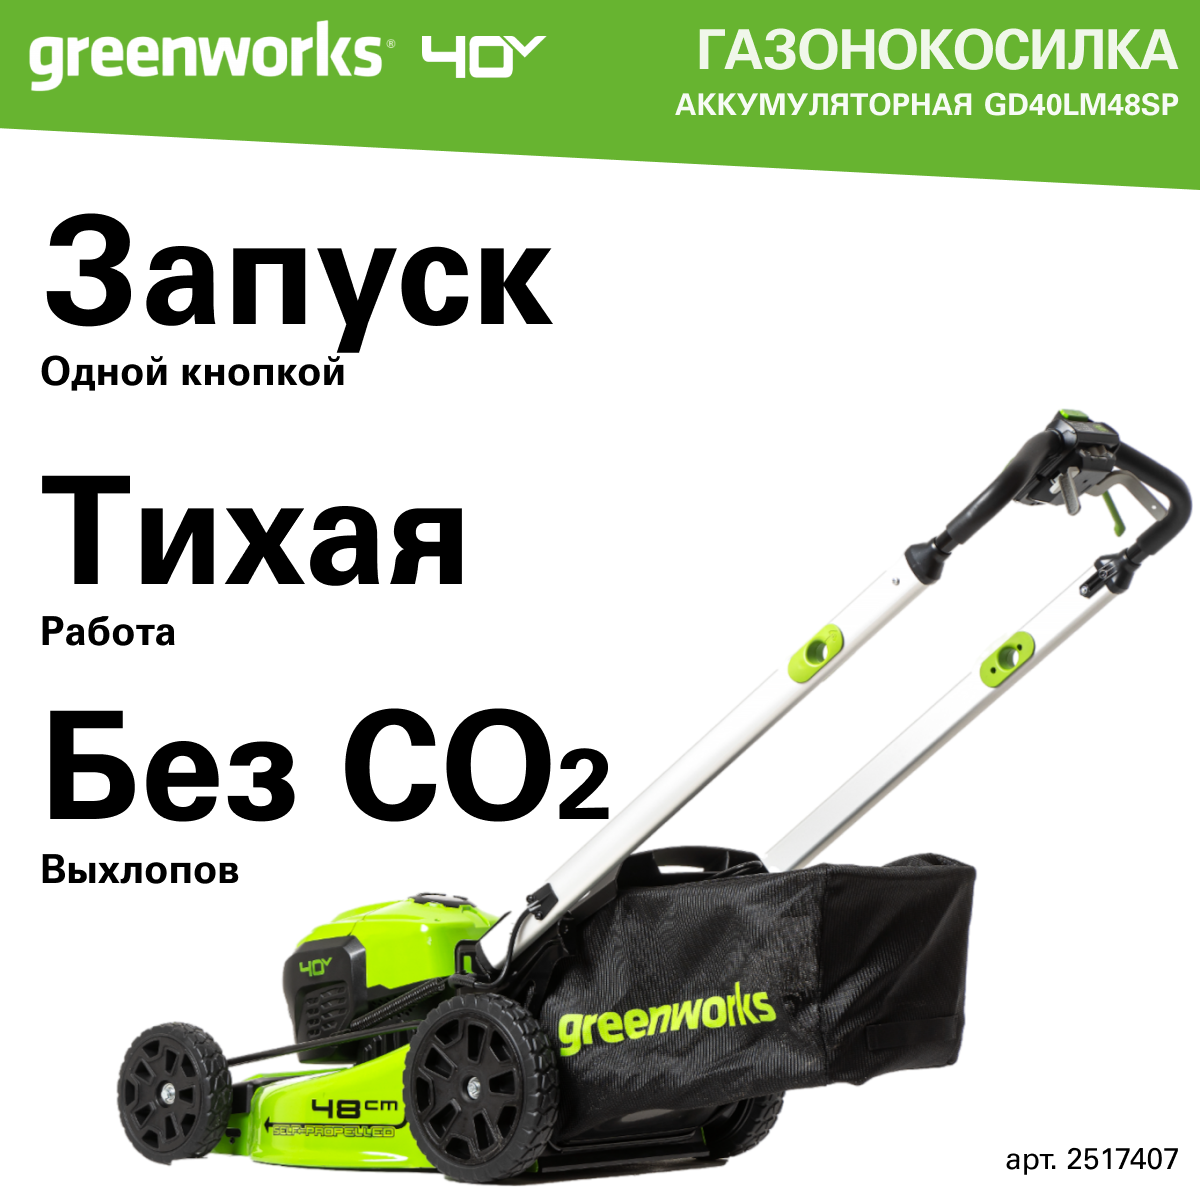 Газонокосилка аккумуляторная Greenworks Арт. 2517407, 40V, 48 см, самоходная, бесщеточная, без АКБ и ЗУ